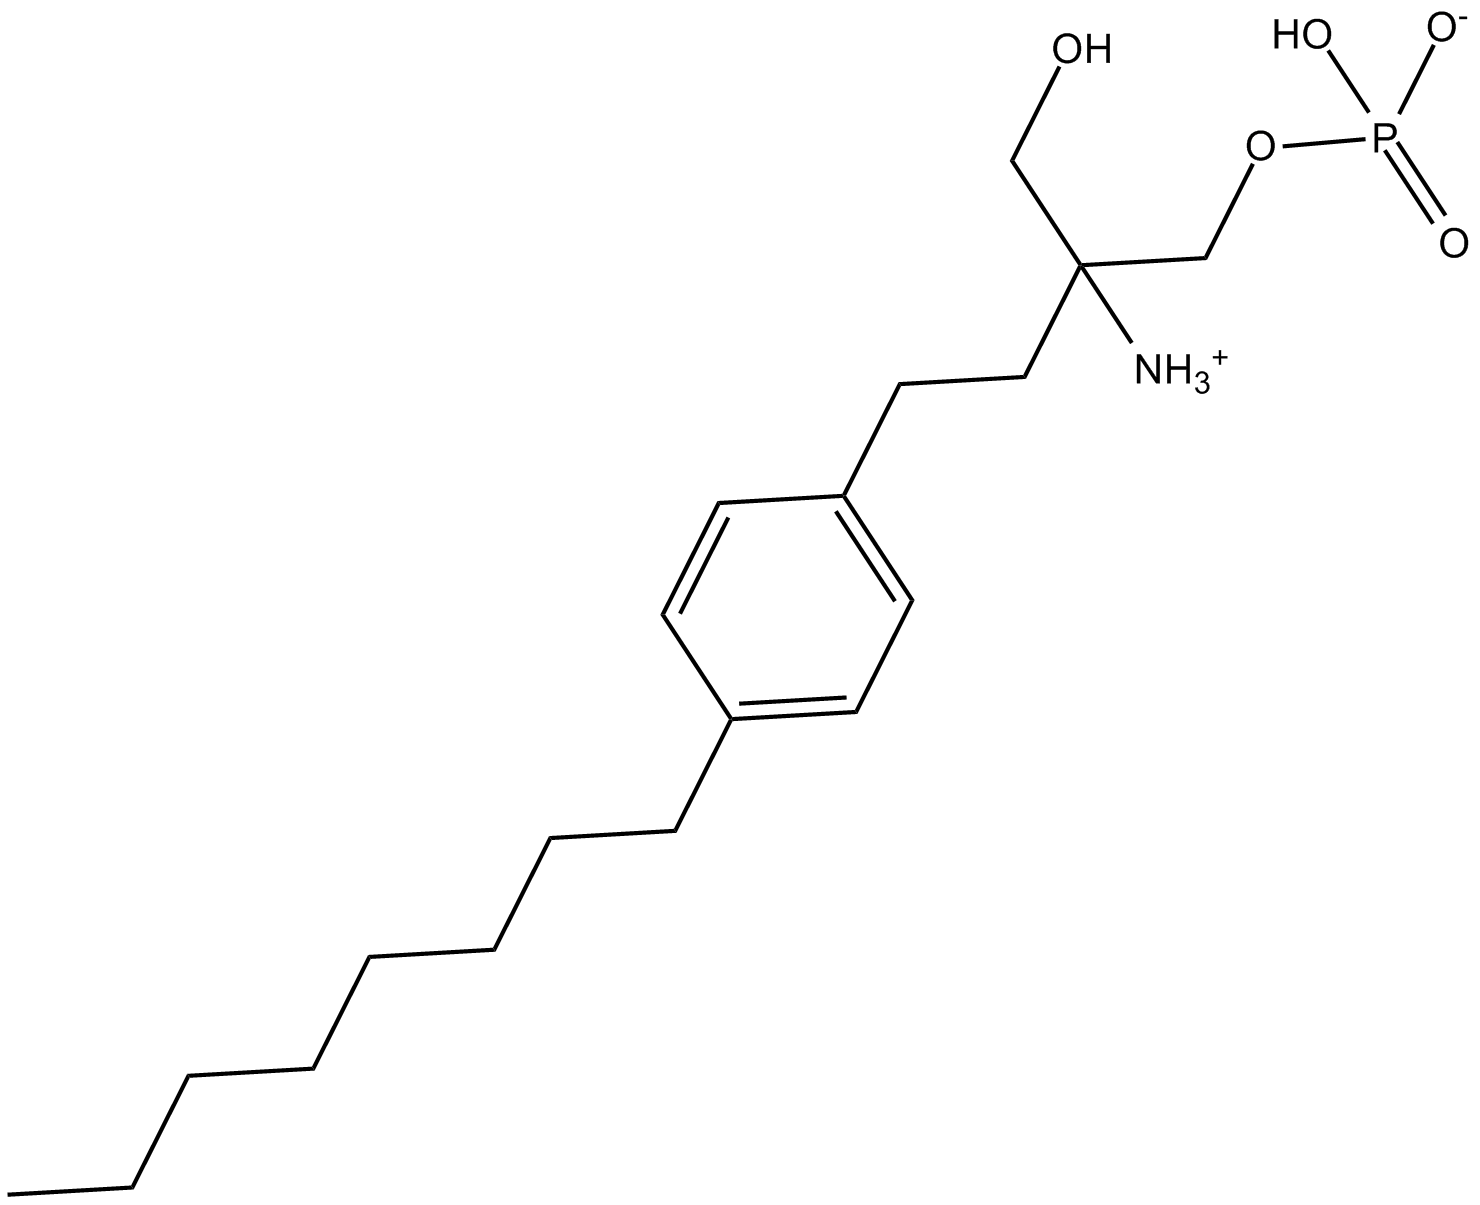 FTY720 Phosphate Chemische Struktur